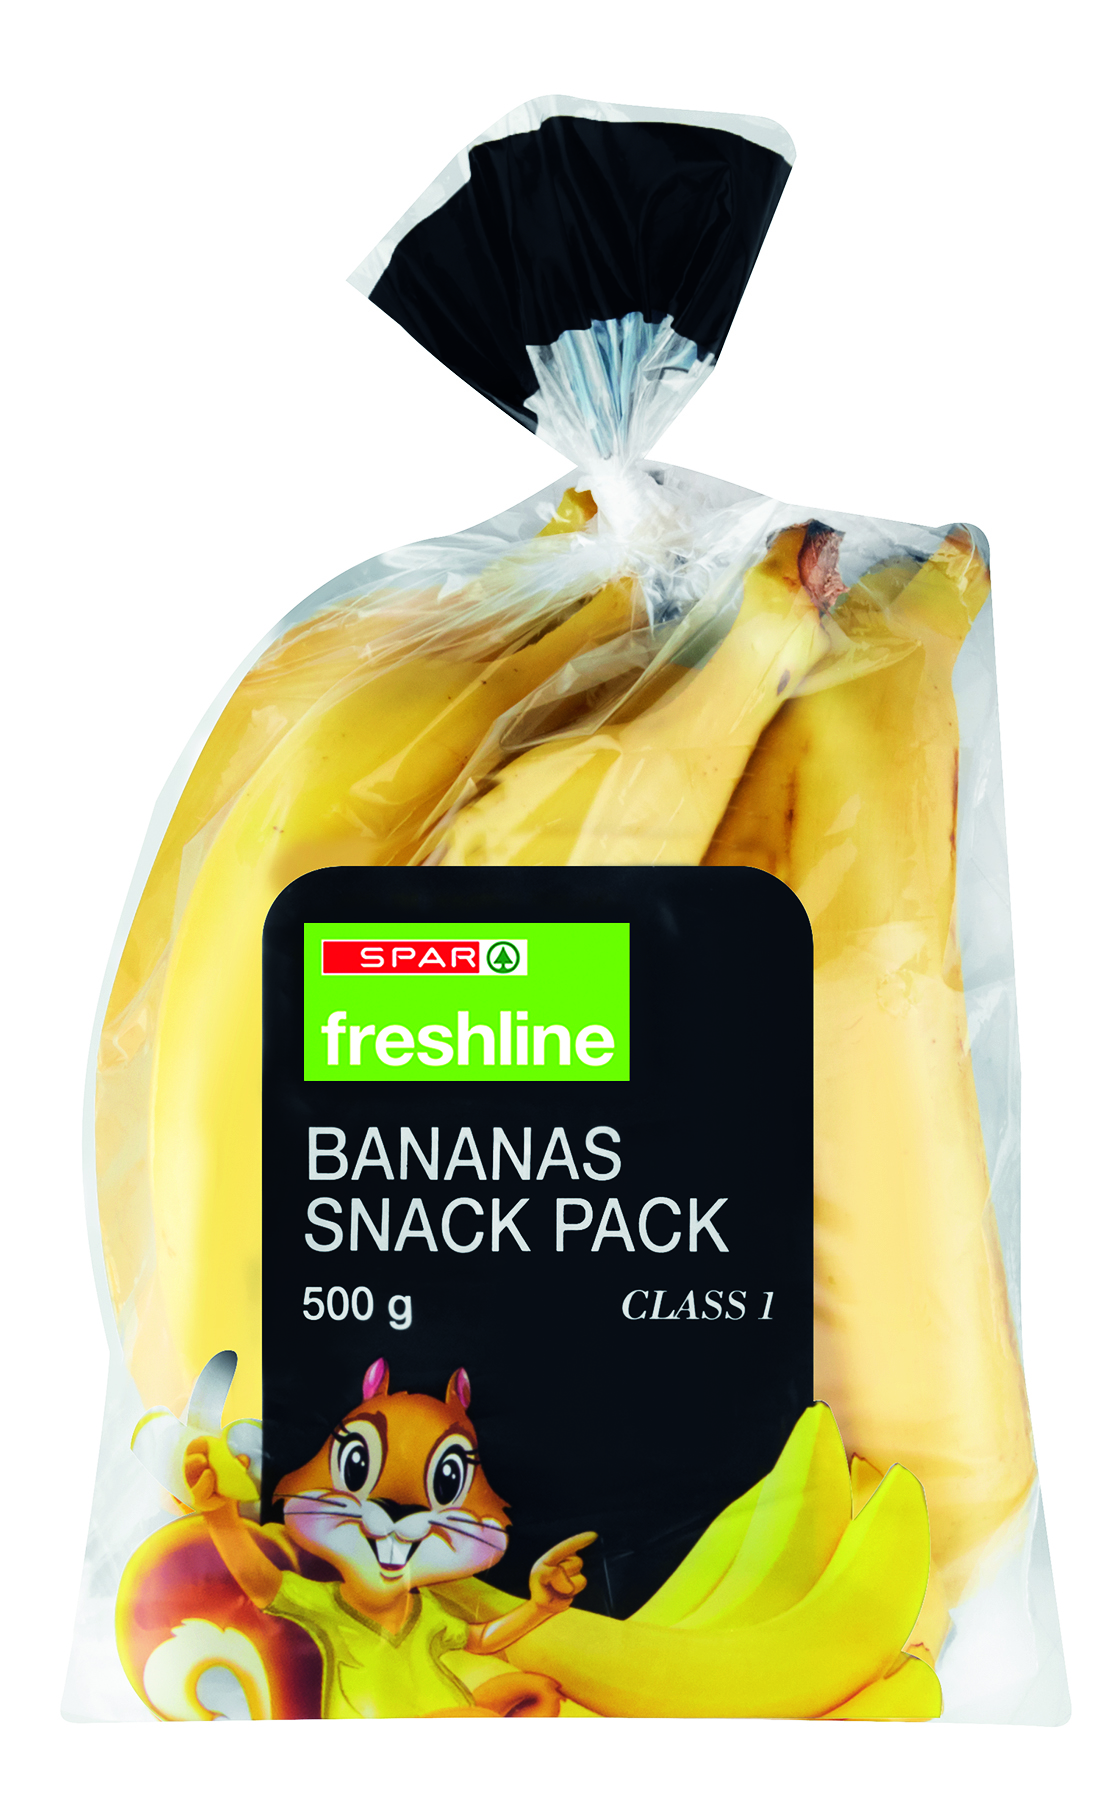 freshline bananas snack pack 